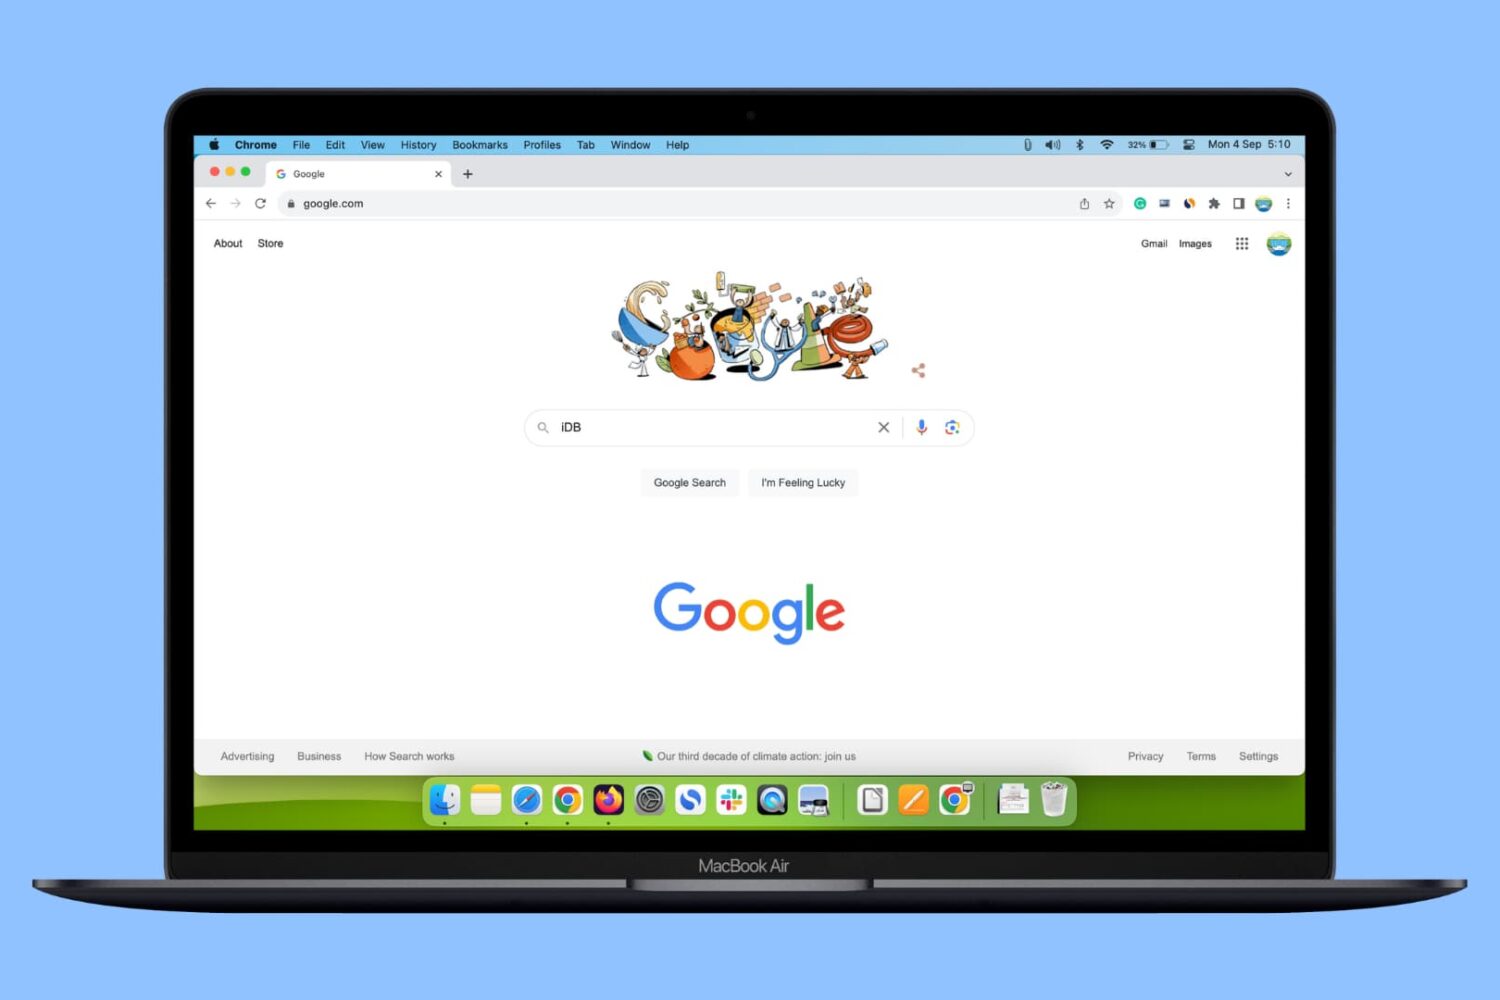 Google's website open in Chrome on MacBook